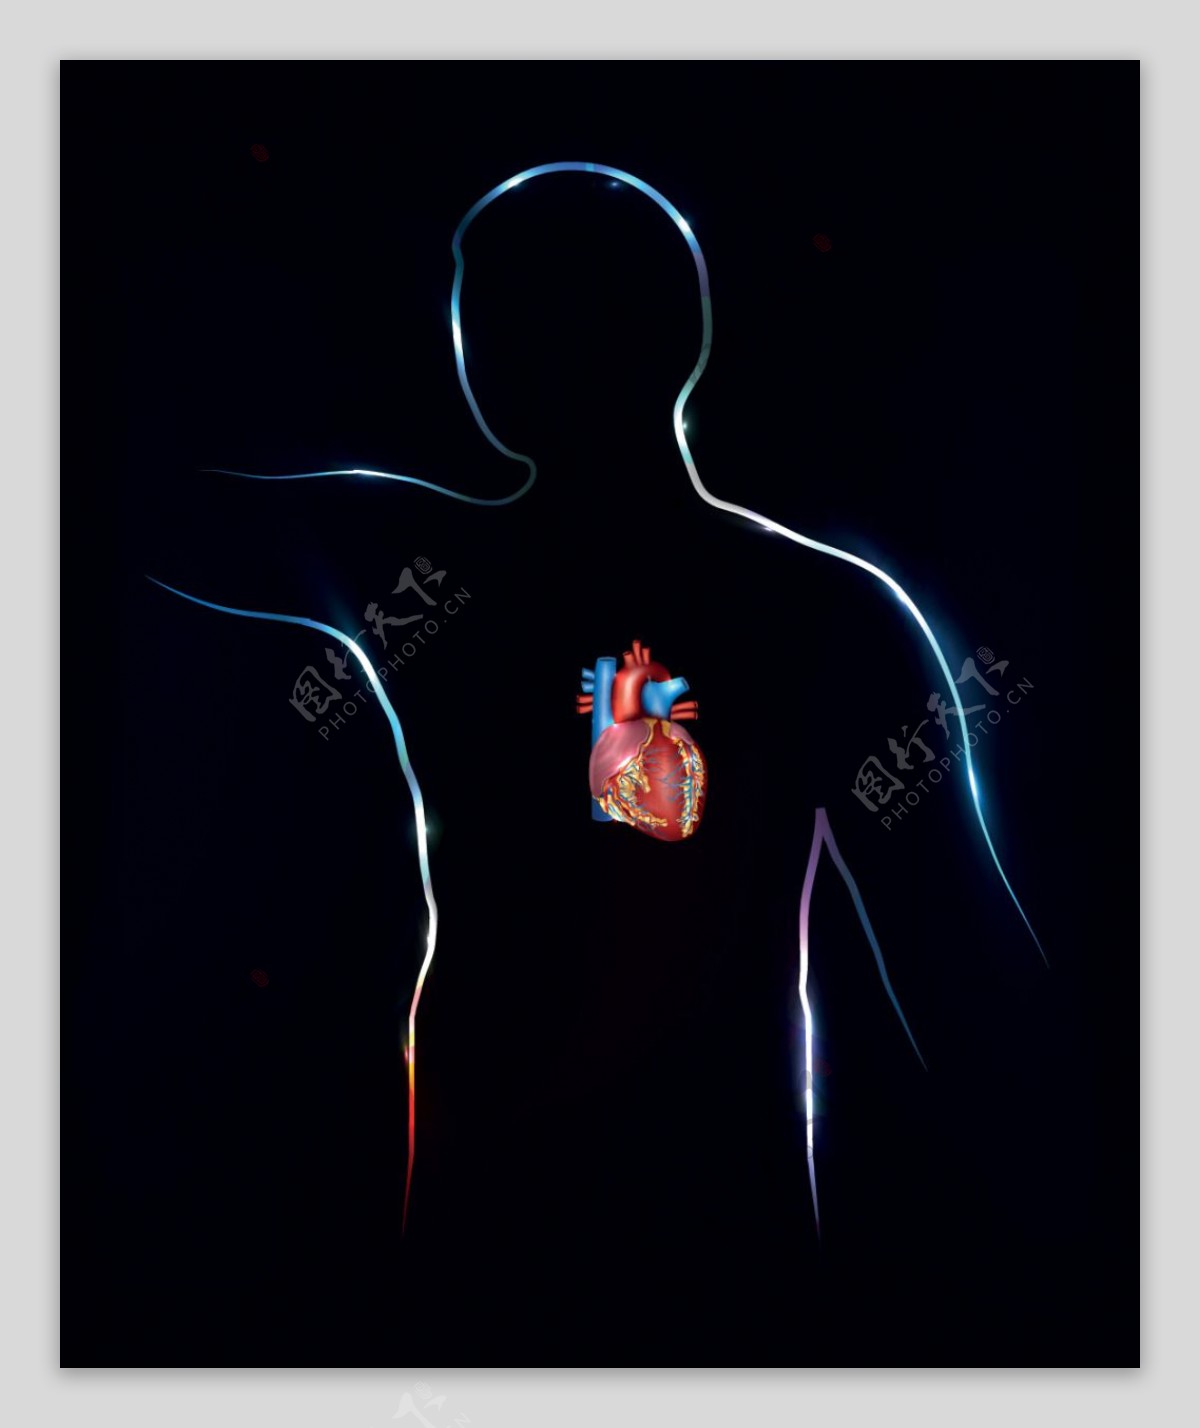 人体心脏器官设计矢量素材